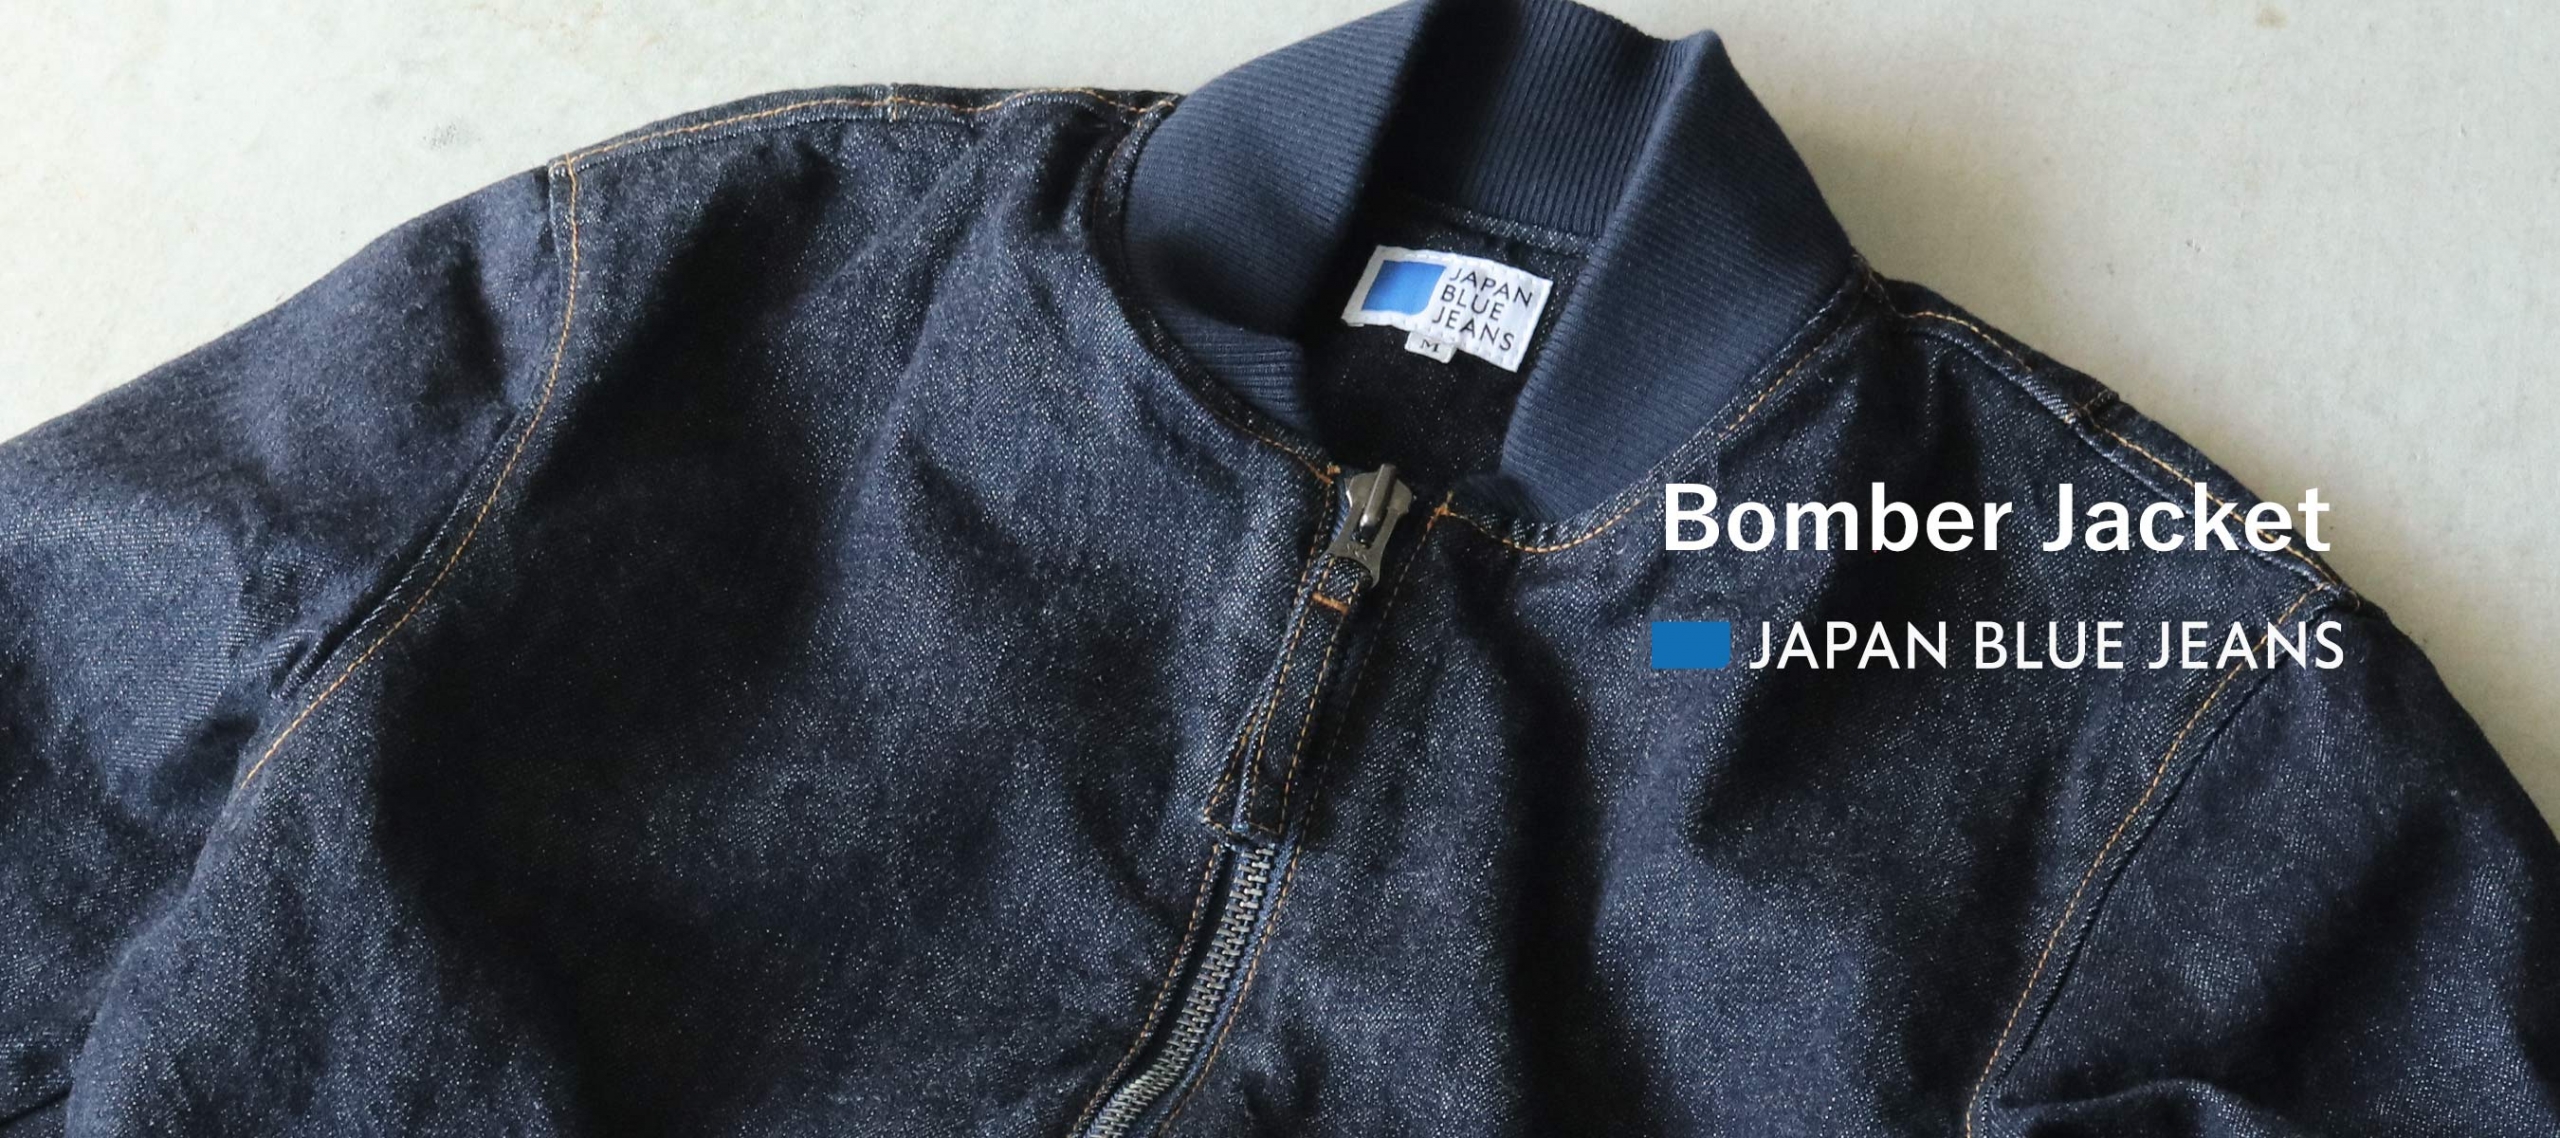 JAPAN BLUE JEANS,Bomber Jacket